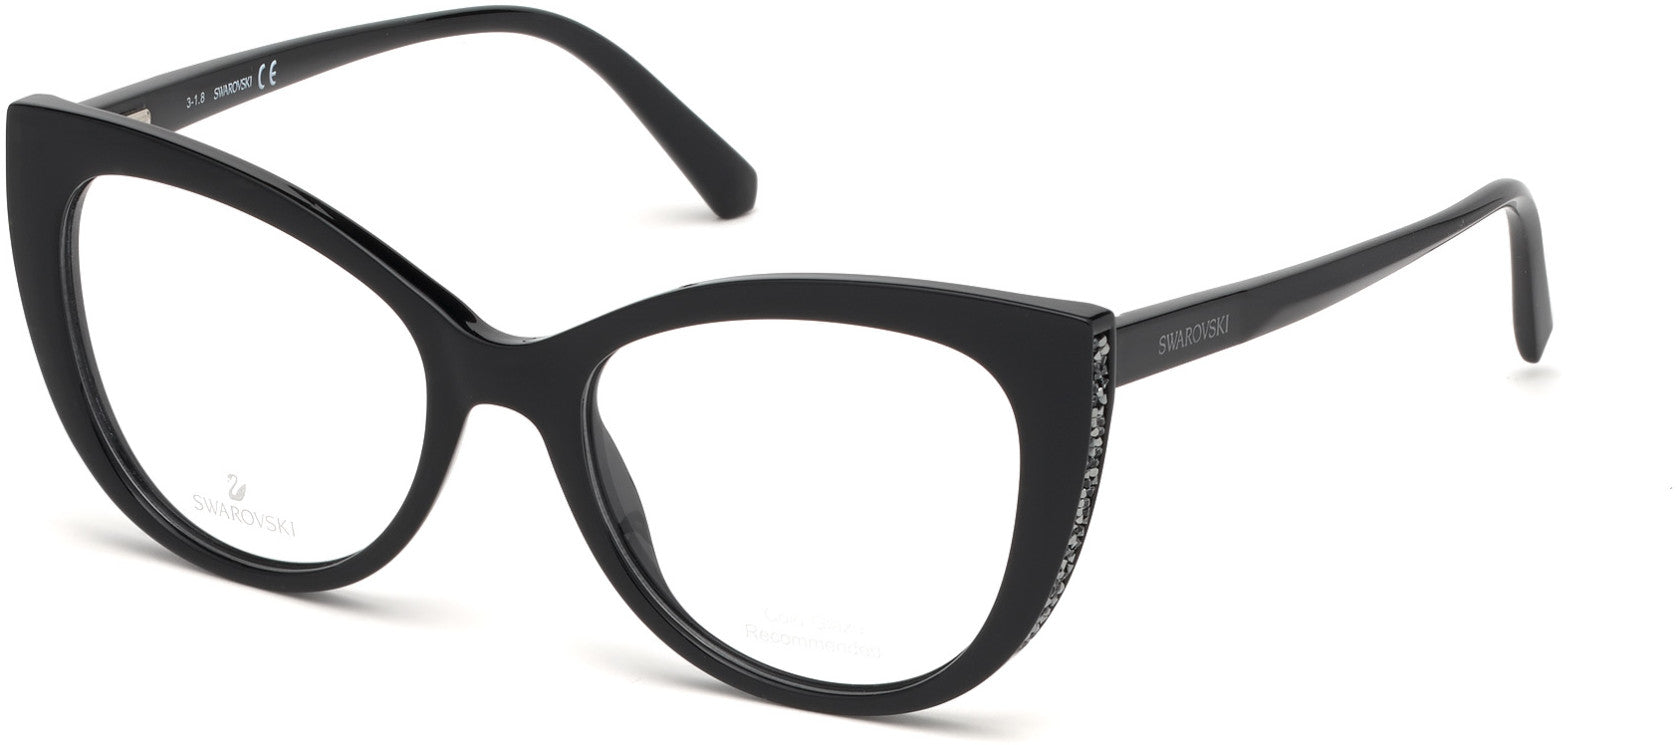 Swarovski SK5291 Cat Eyeglasses 001-001 - Shiny Black